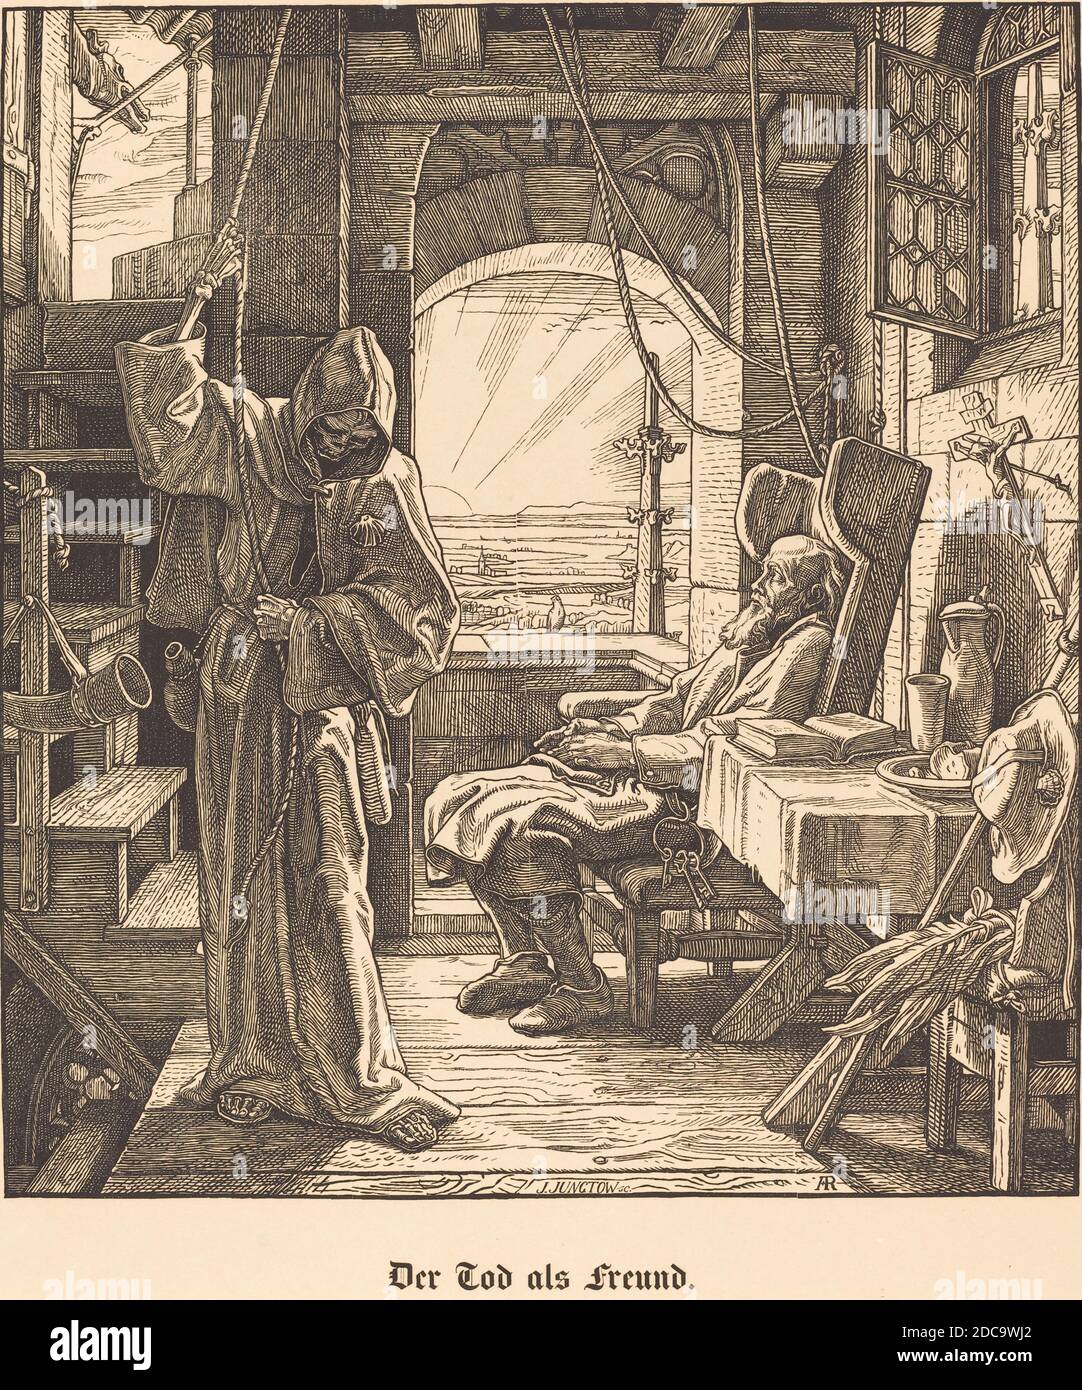 Alfred Retel, (artiste), allemand, 1816 - 1859, Richard Julius Jungtow, (graveur de bois), allemand, né en 1828, Der Tod als Freund (mort en tant qu'ami), 1851, gravure en bois sur papier vélin Banque D'Images